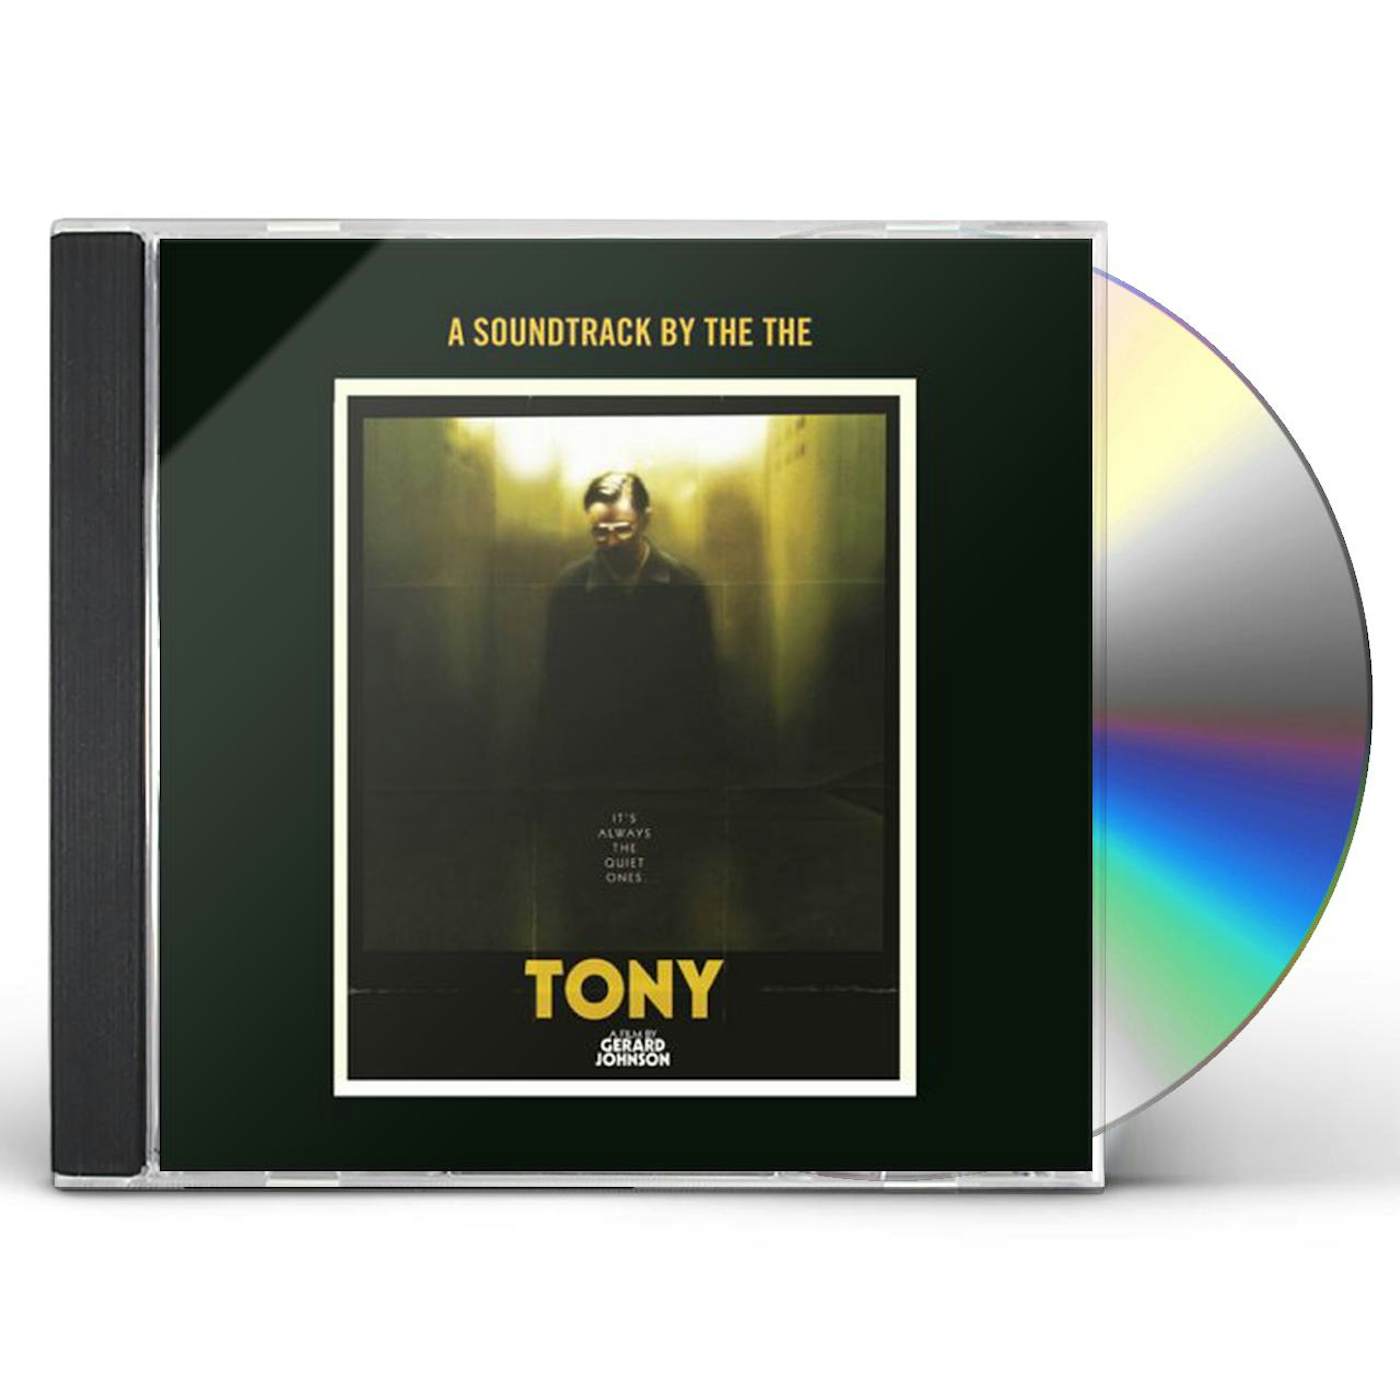 The The TONY CD